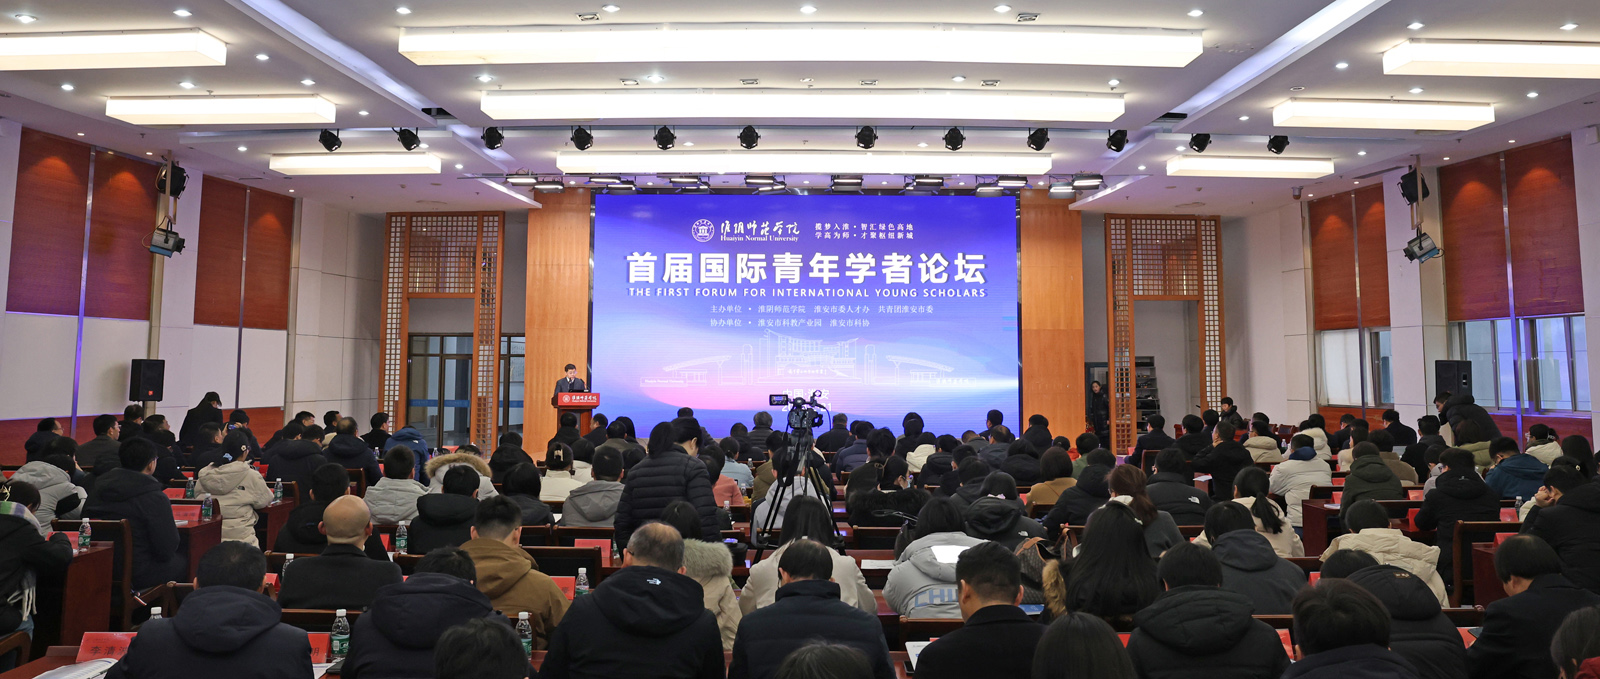 淮阴师范学院首届国际青年学者论坛隆重举行